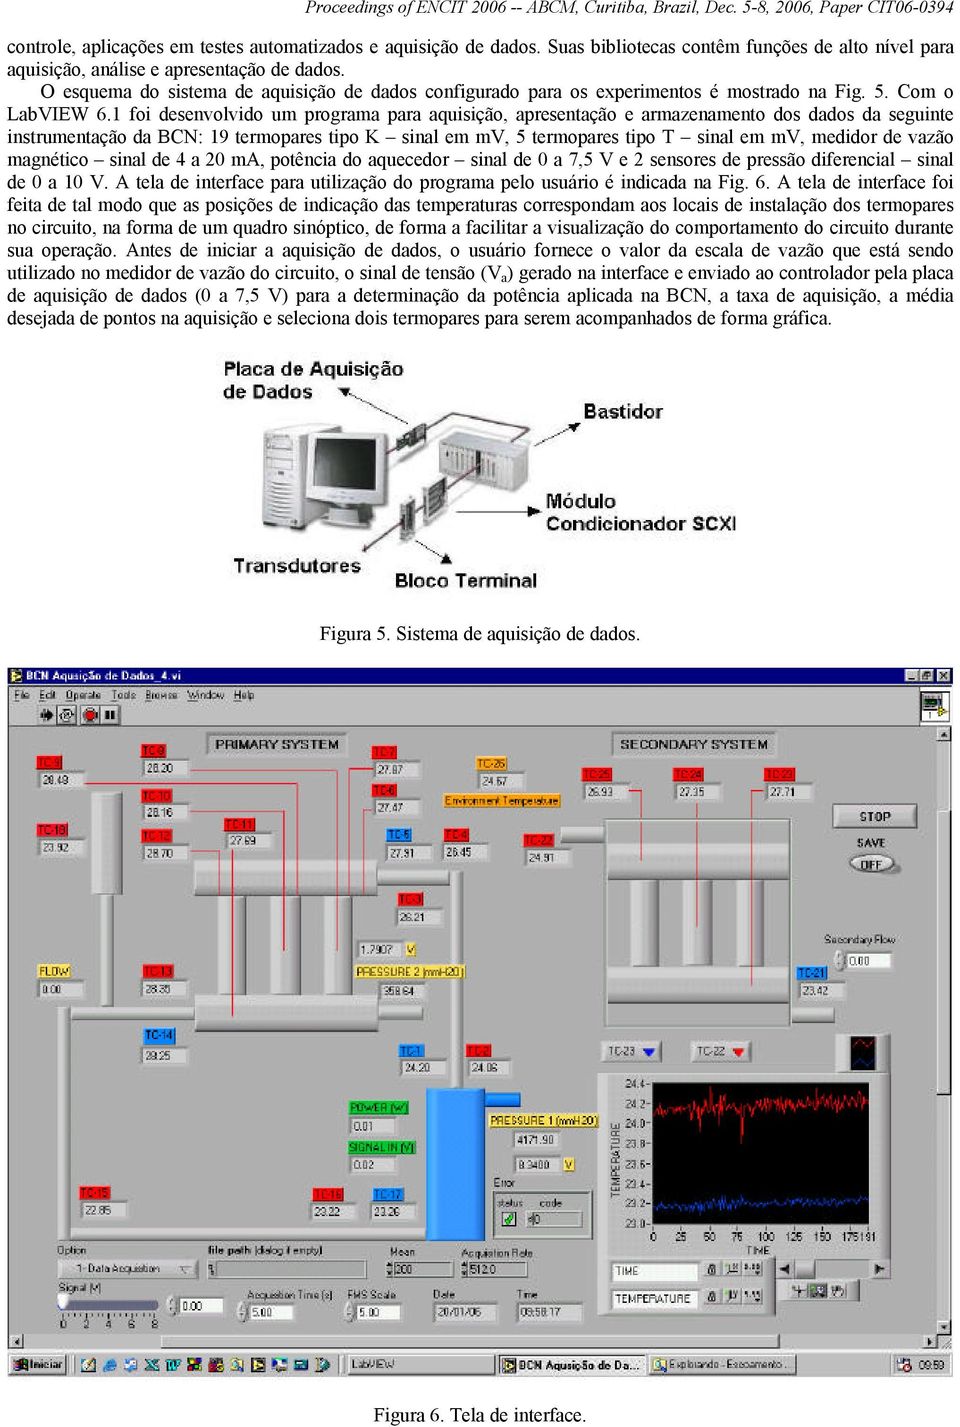 1 foi desenvolvido um programa para aquisição, apresentação e armazenamento dos dados da seguinte instrumentação da BCN: 19 termopares tipo K sinal em mv, 5 termopares tipo T sinal em mv, medidor de